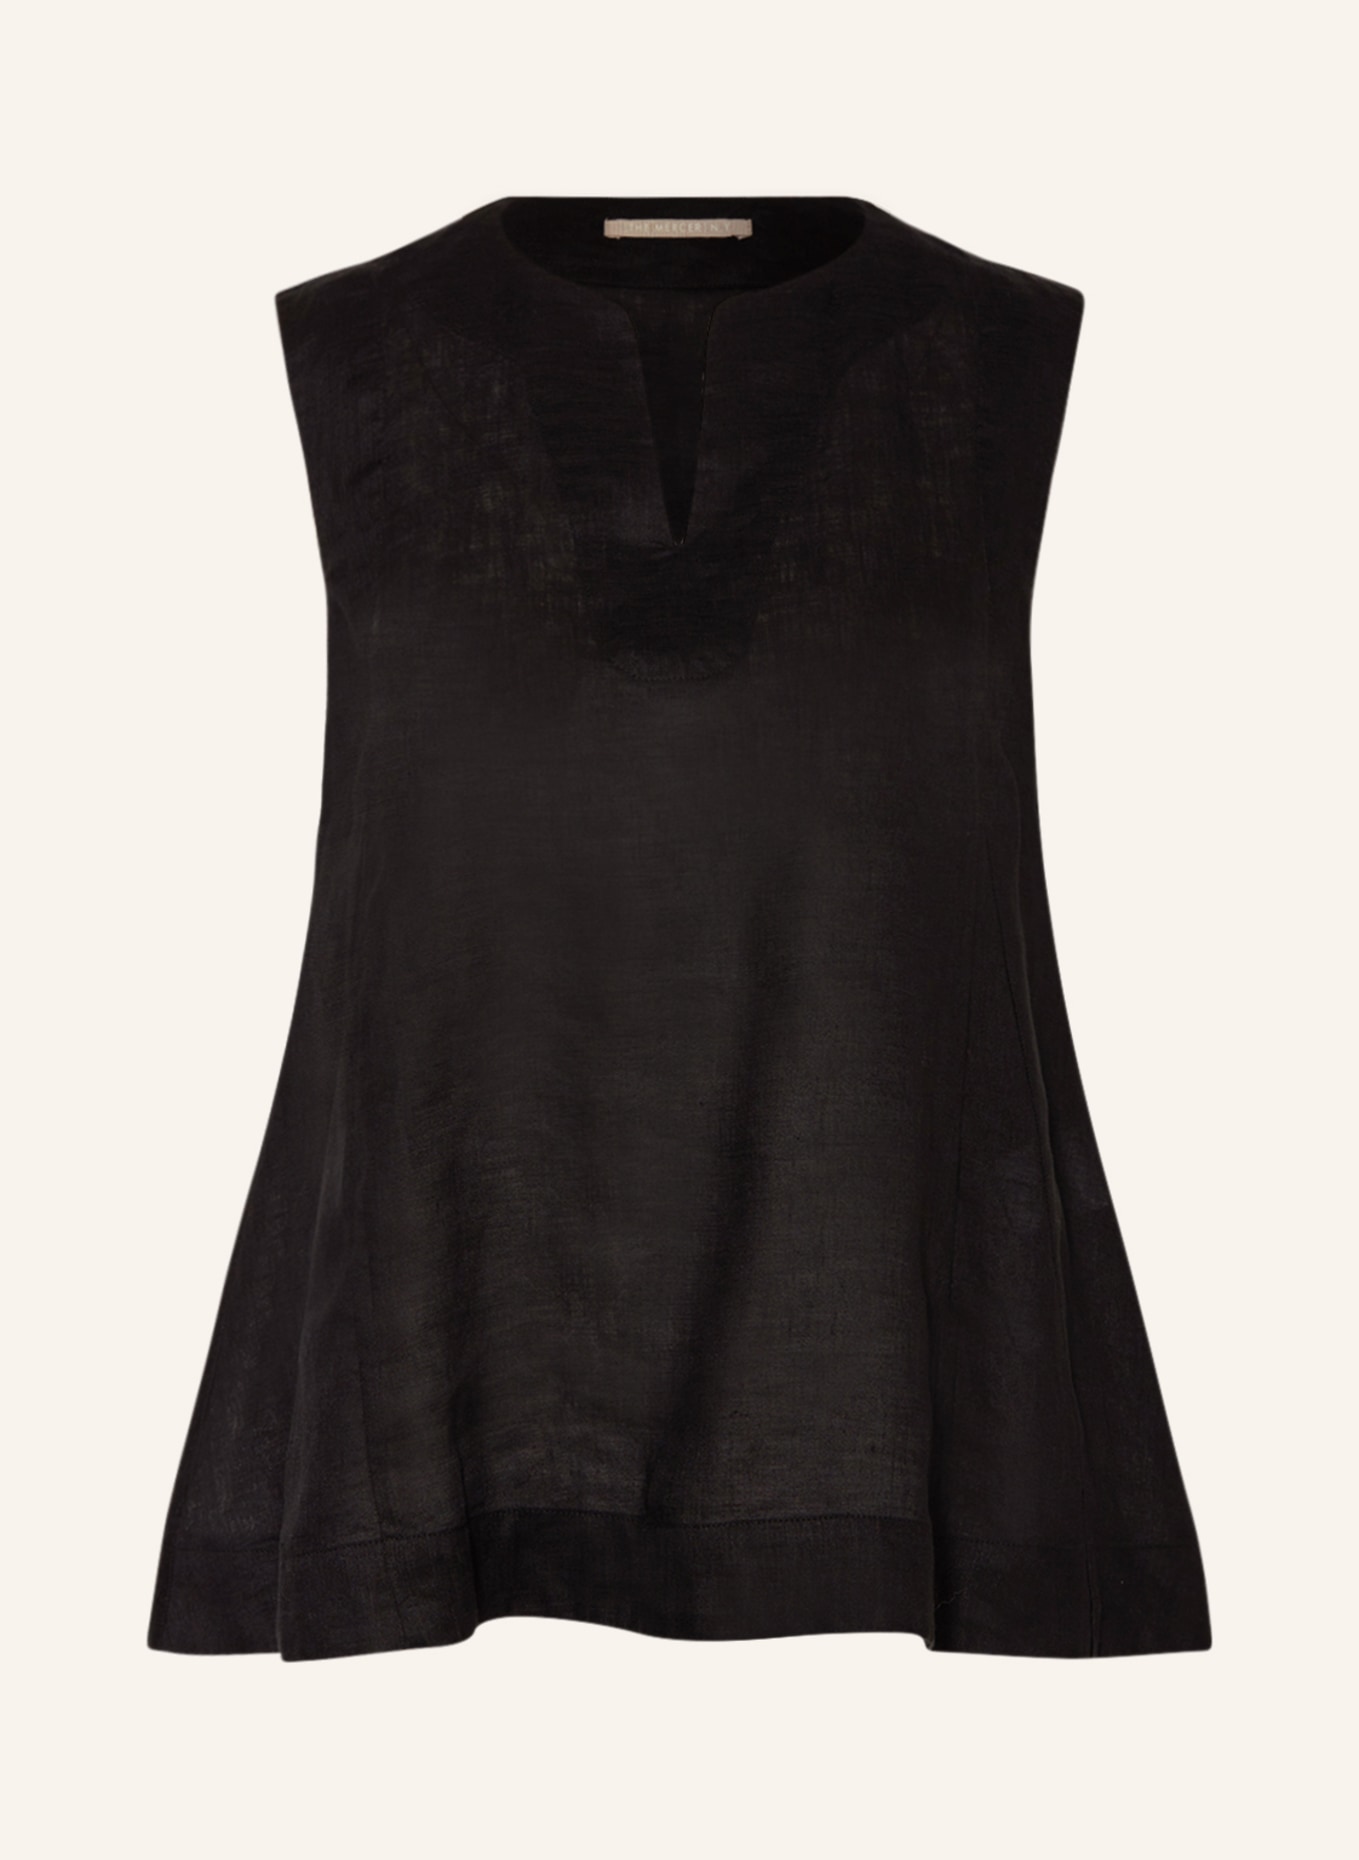 (THE MERCER) N.Y. Linen top, Color: BLACK (Image 1)